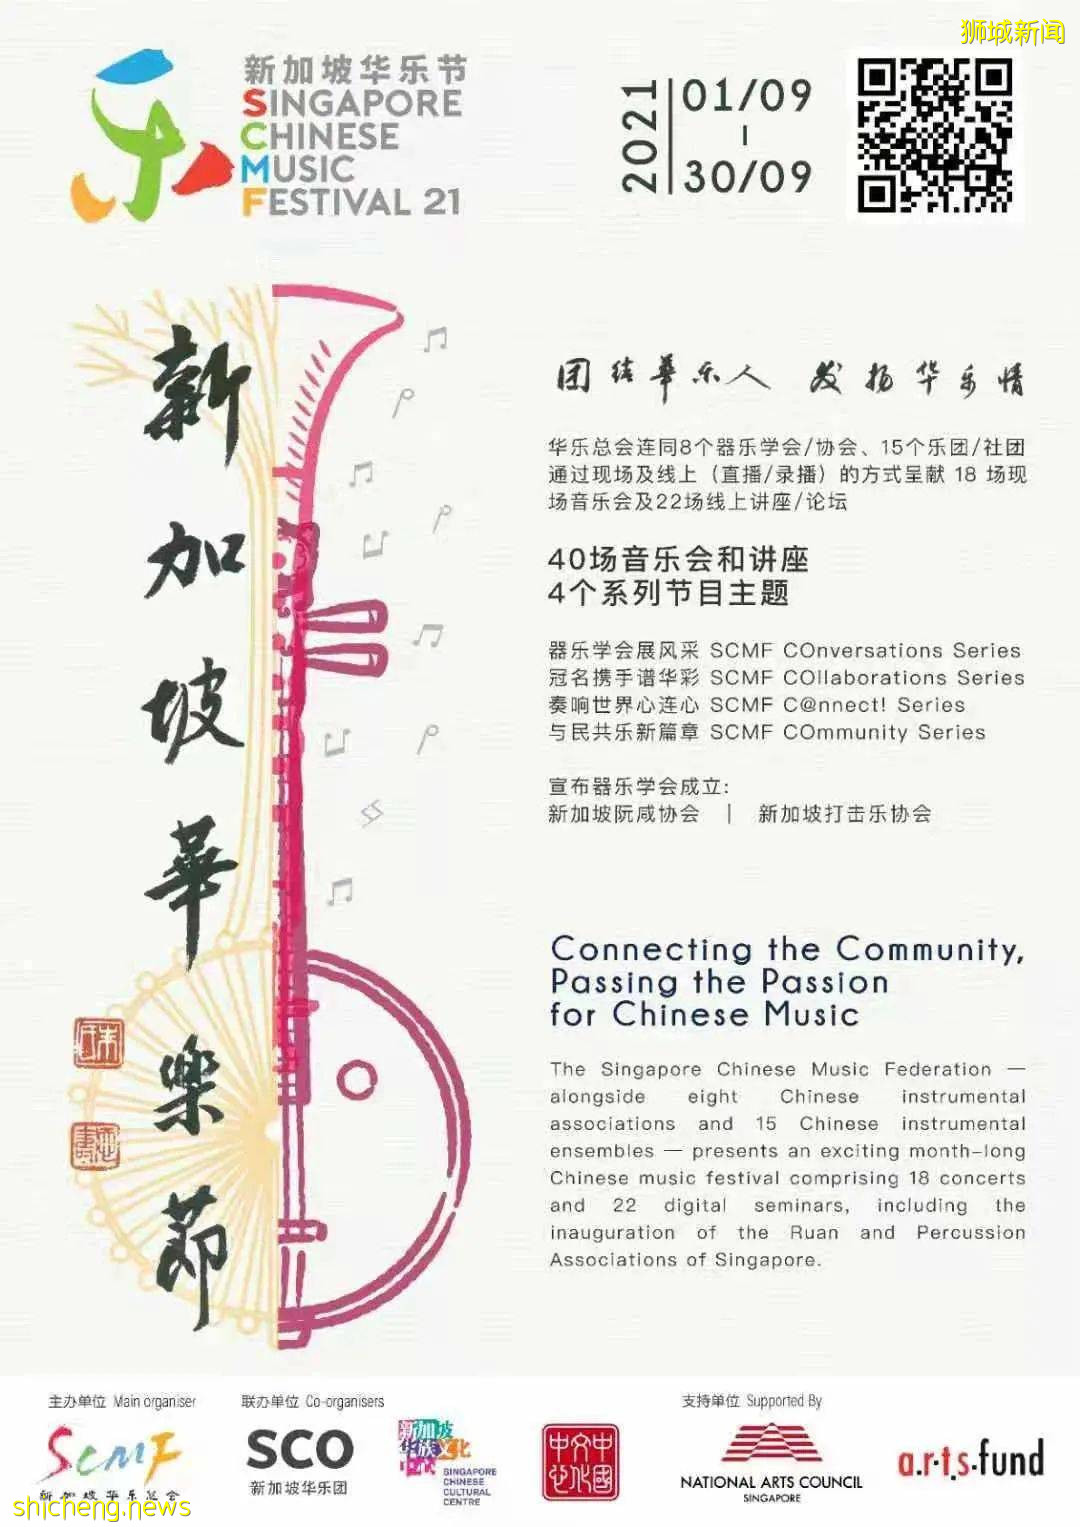 金秋九月 华乐盛典 第二届新加坡华乐节呈献情和艺